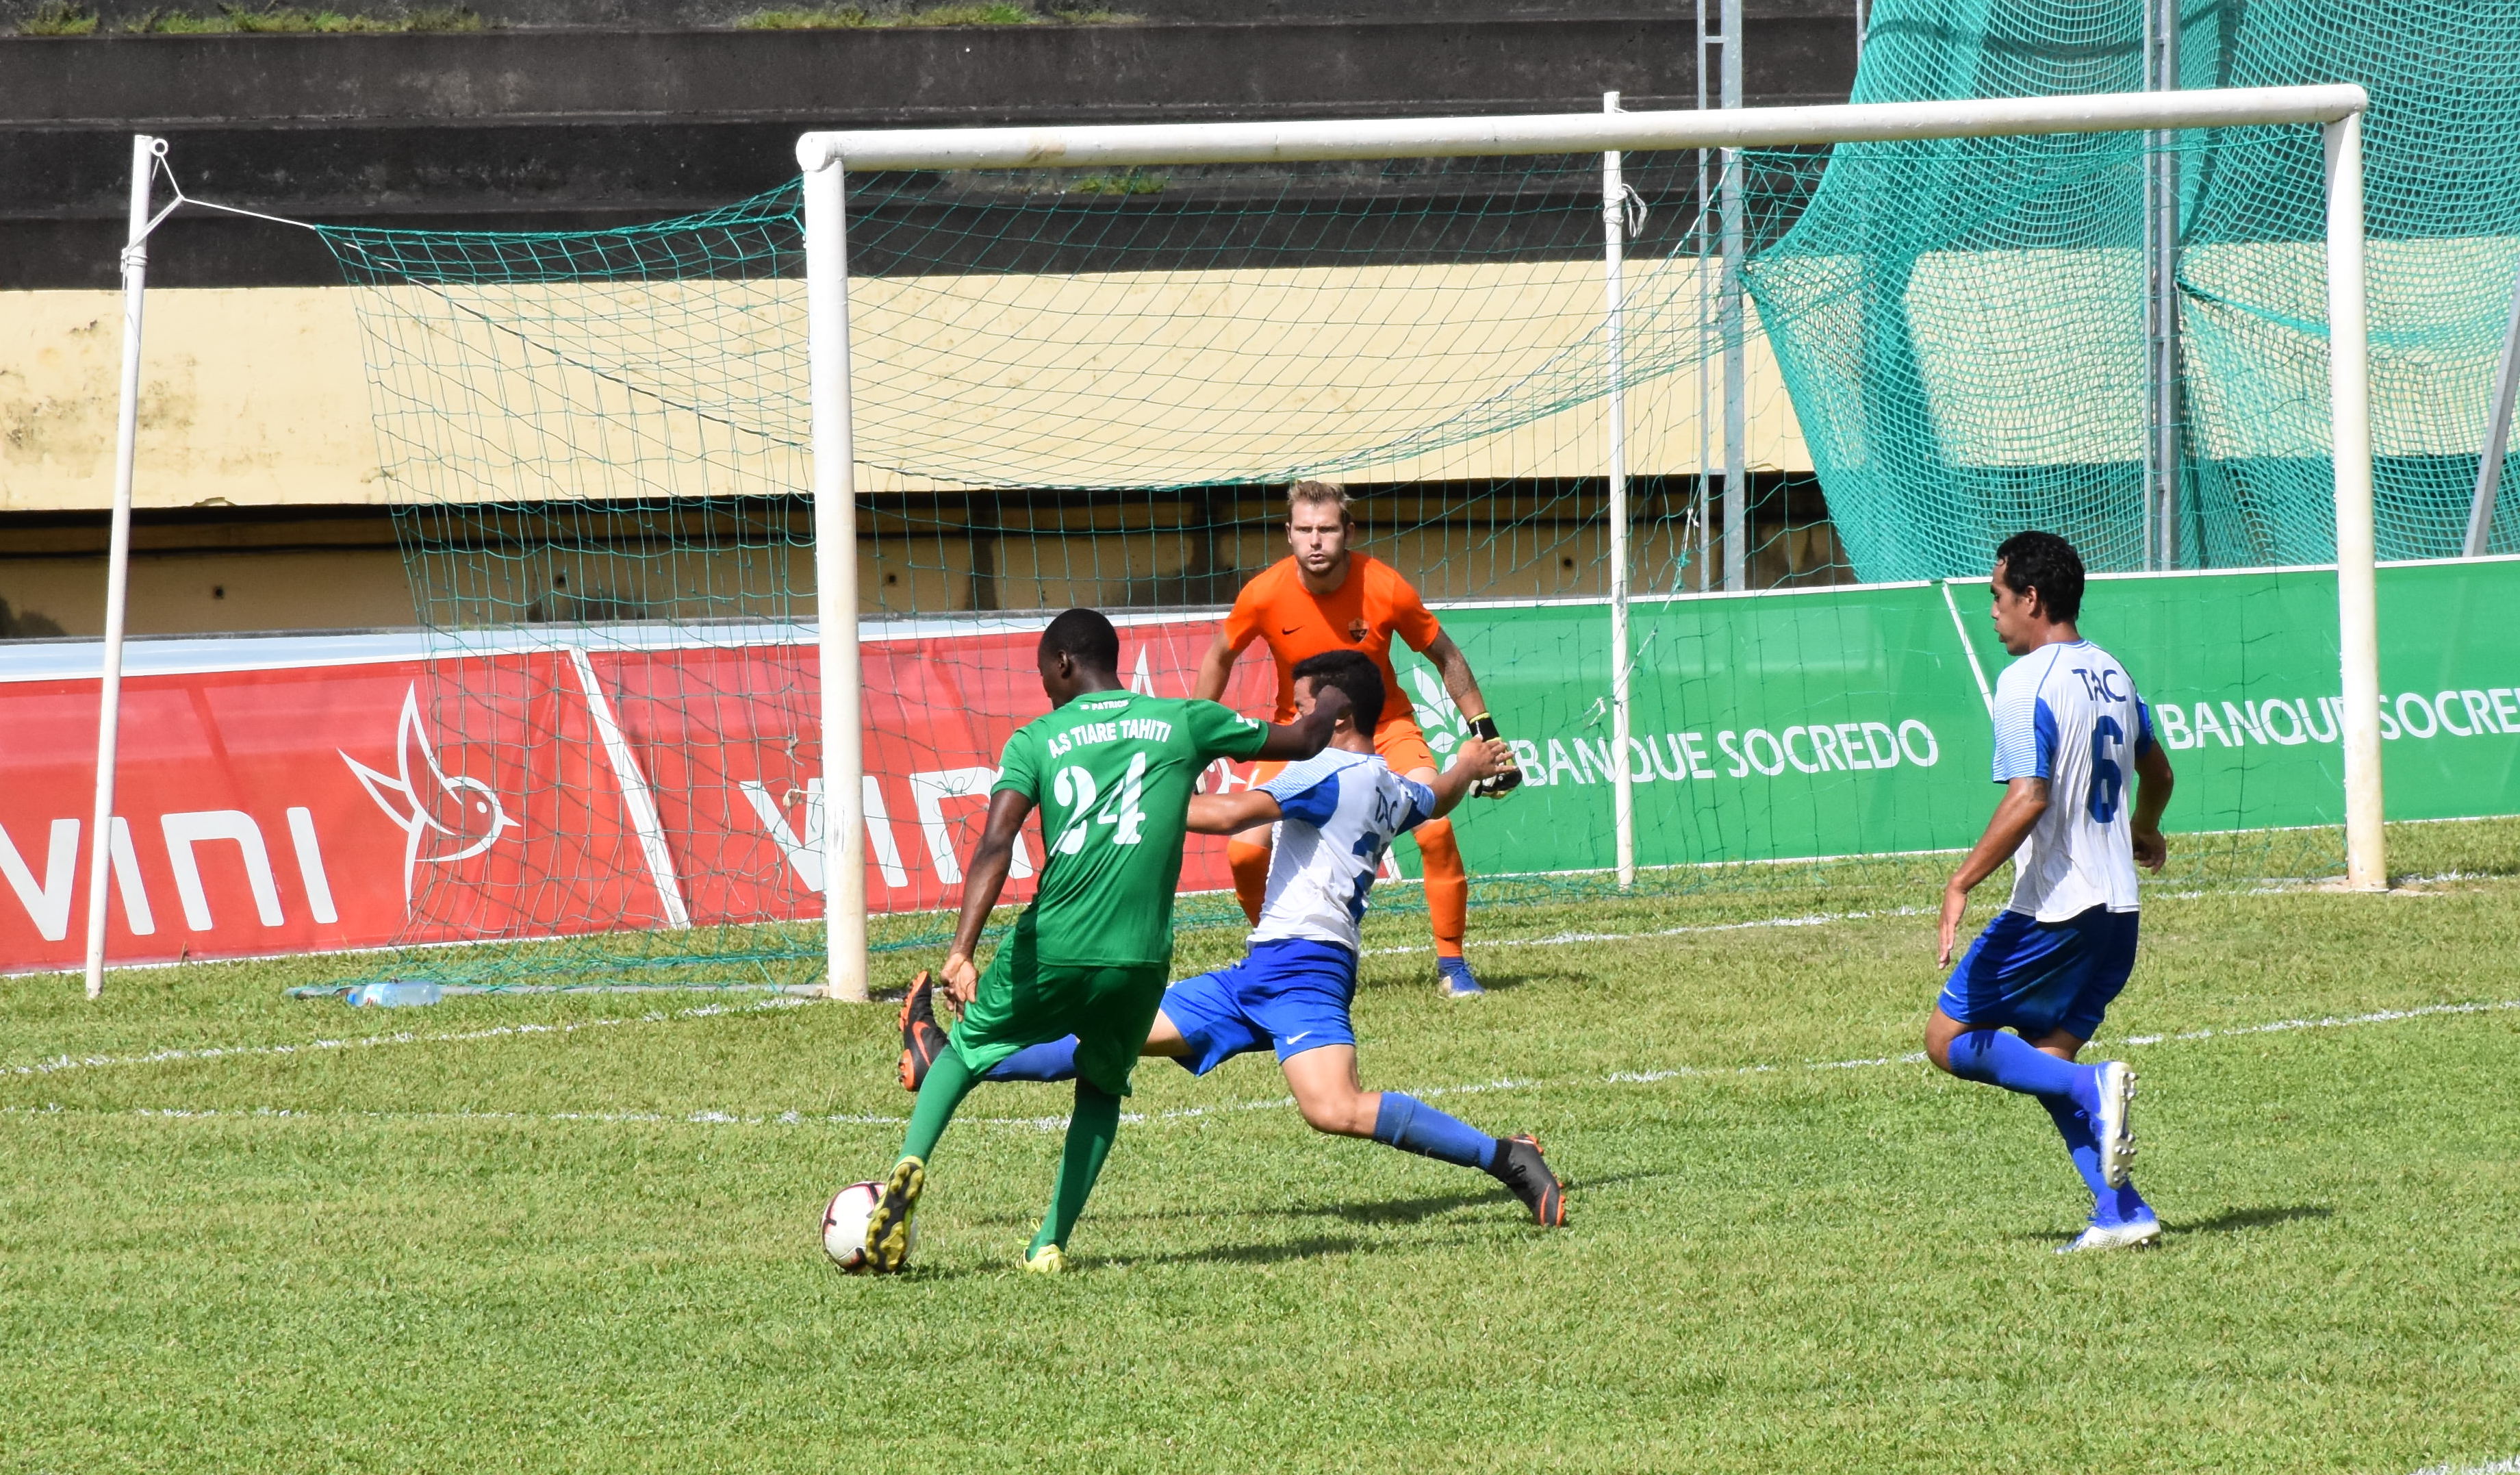 Bio Odo Chabi, nouvelle attaquant béninois de l'AS Tiare Tahiti, a joué son premier match samedi sous ses nouvelles couleurs et a participé au succès de son équipe.